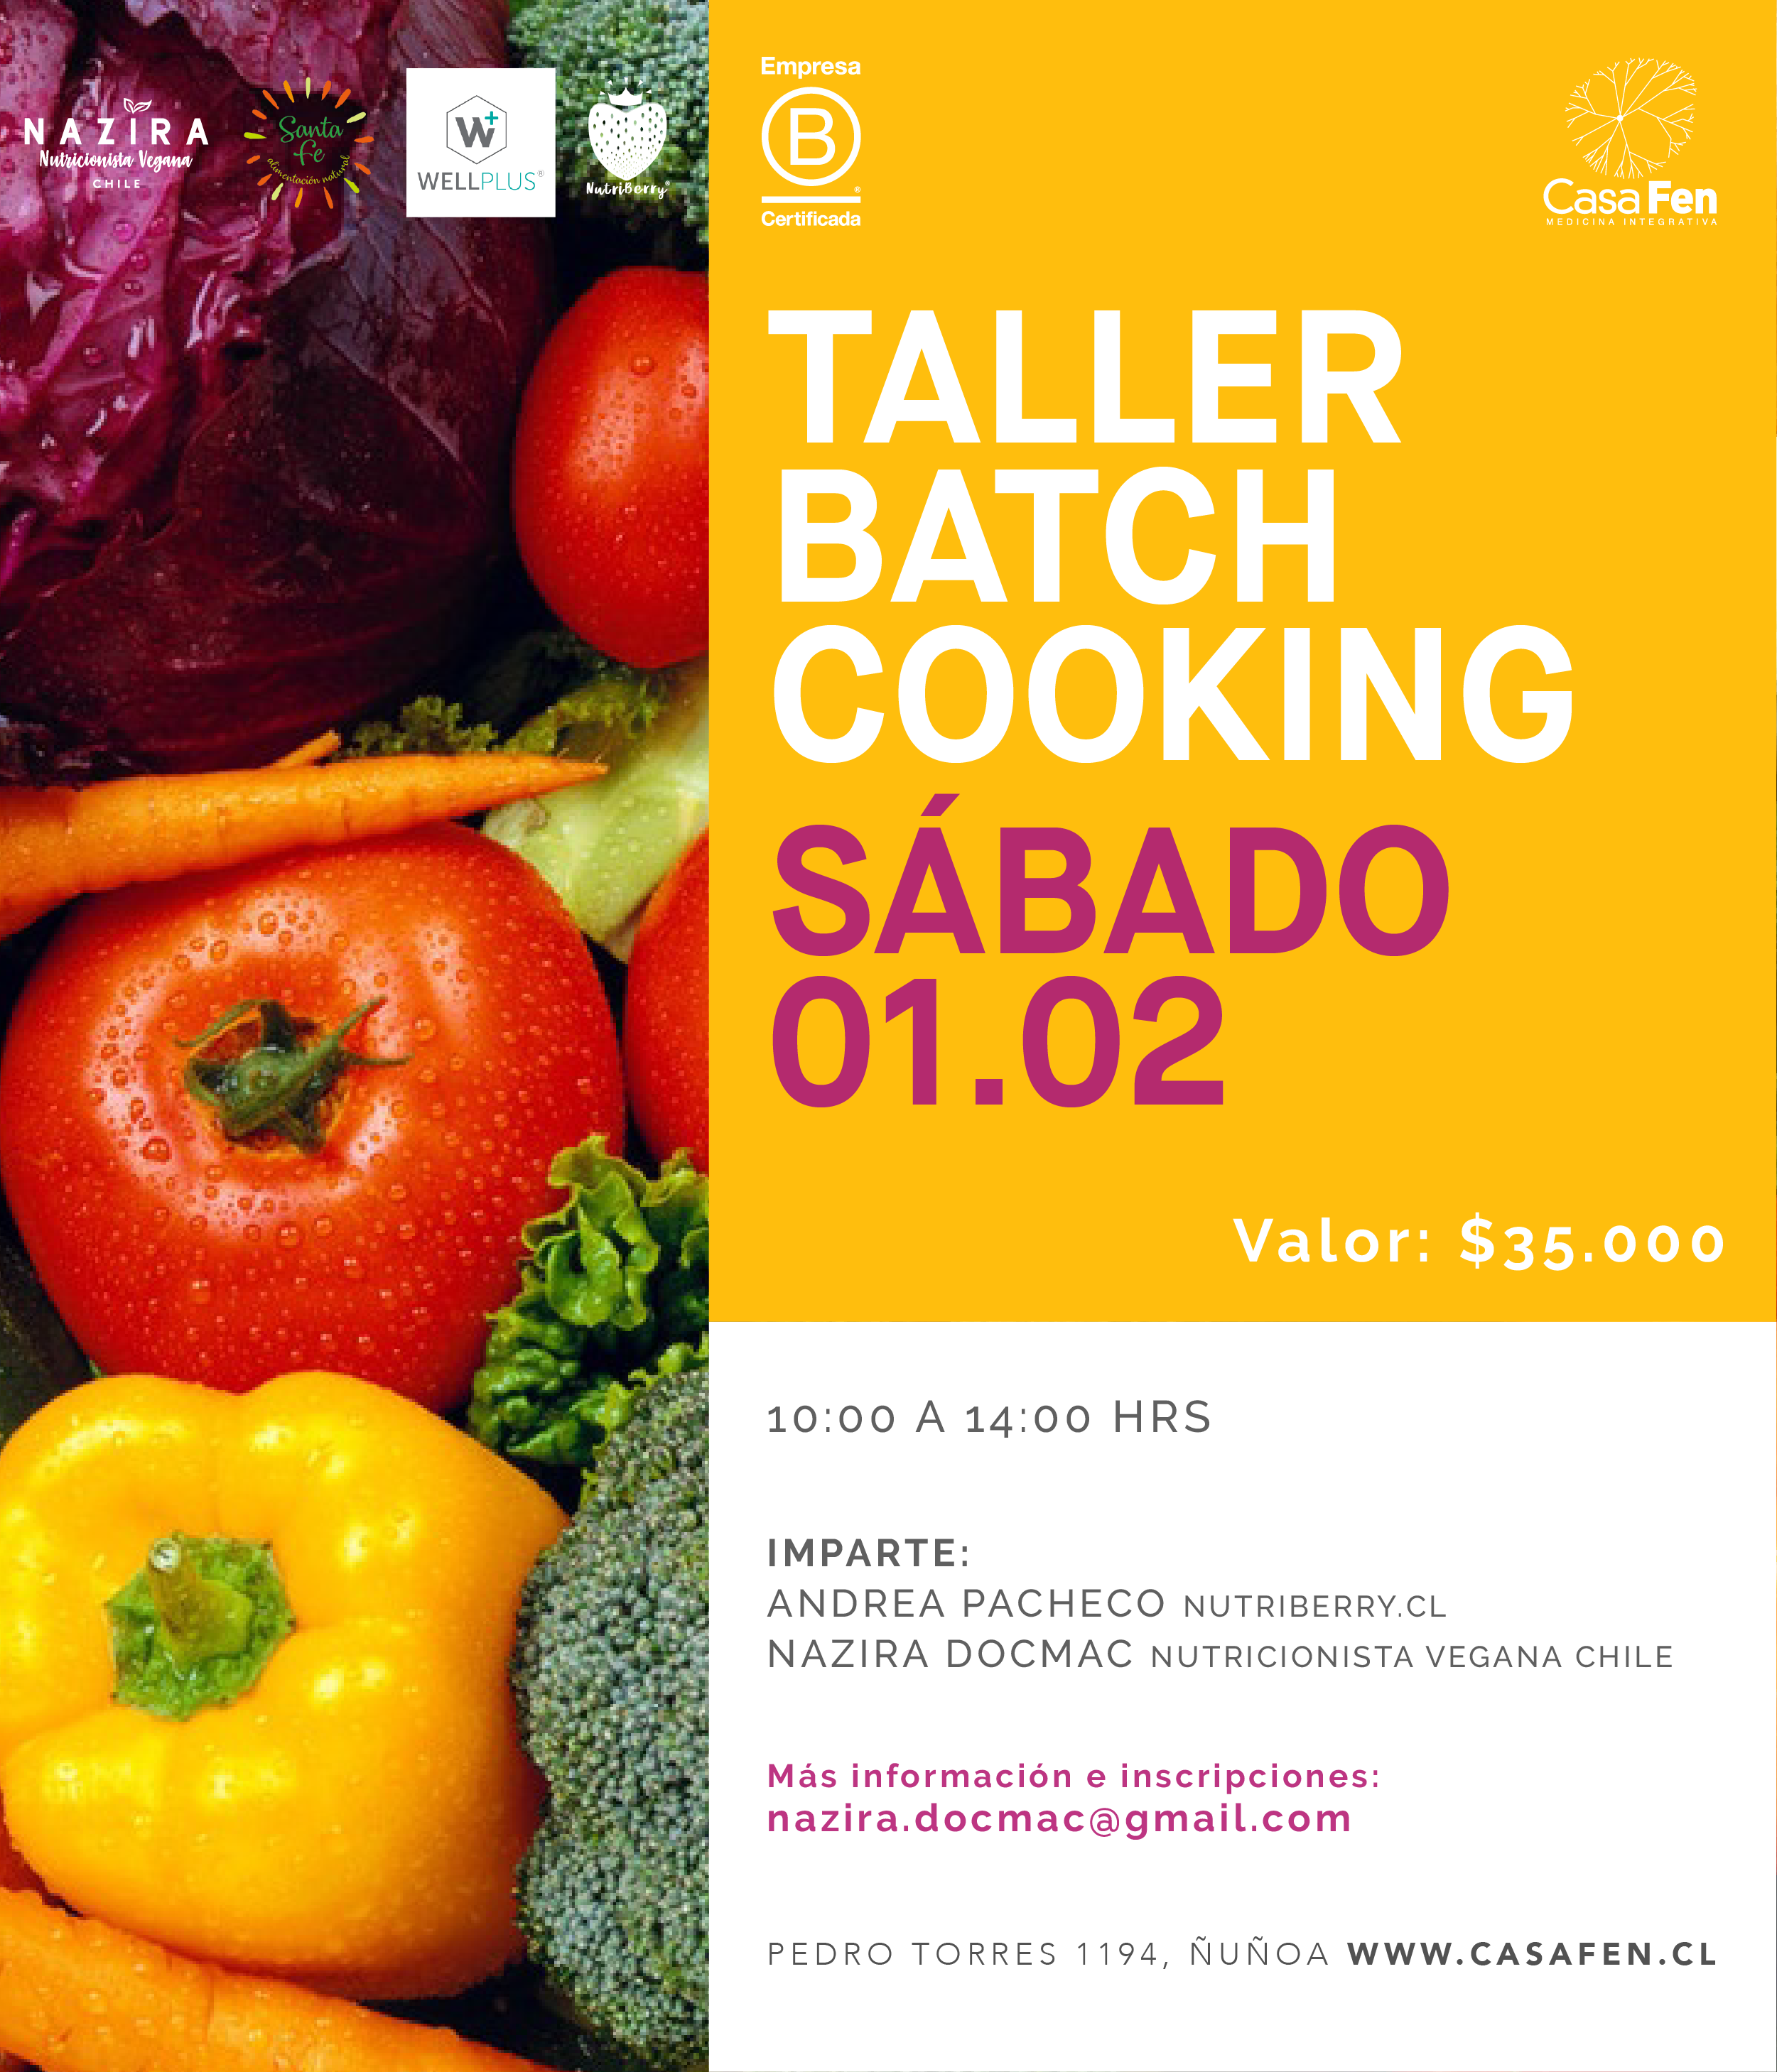 Taller batch cooking - casafen